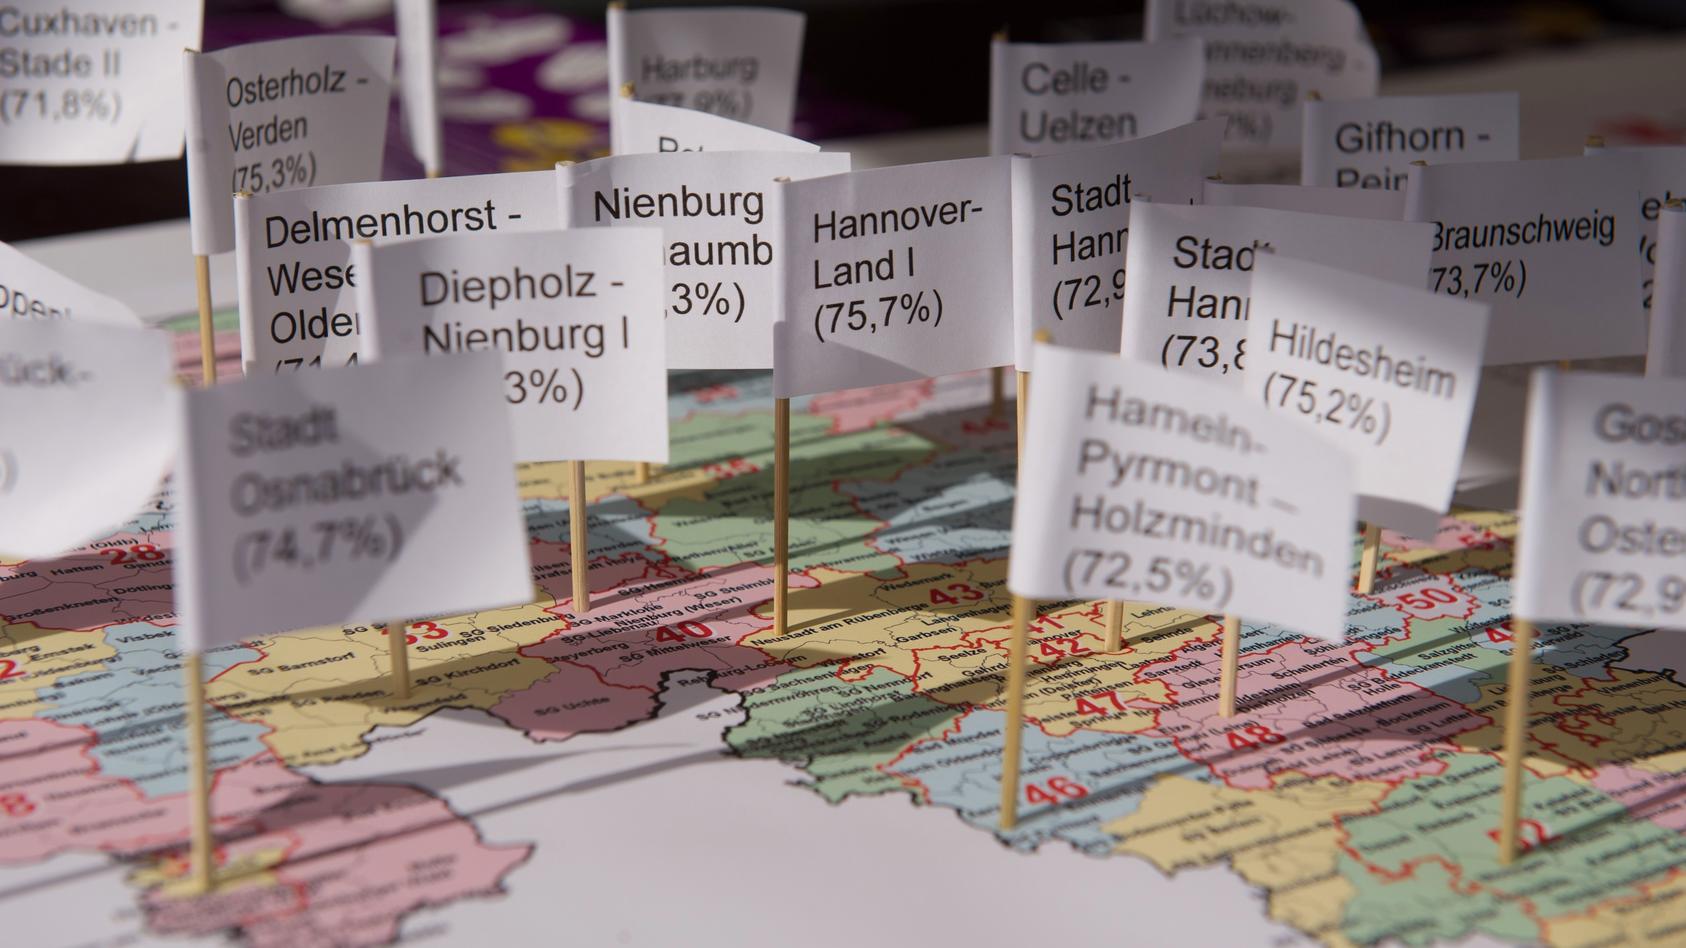 Fähnchen verschiedener niedersächsischer Wahlkreise mit der prozentualen Wahlbeteiligung aus dem Jahr 2009 stecken am 17.09.2013 in Hannover (Niedersachsen) in einer Landkarte